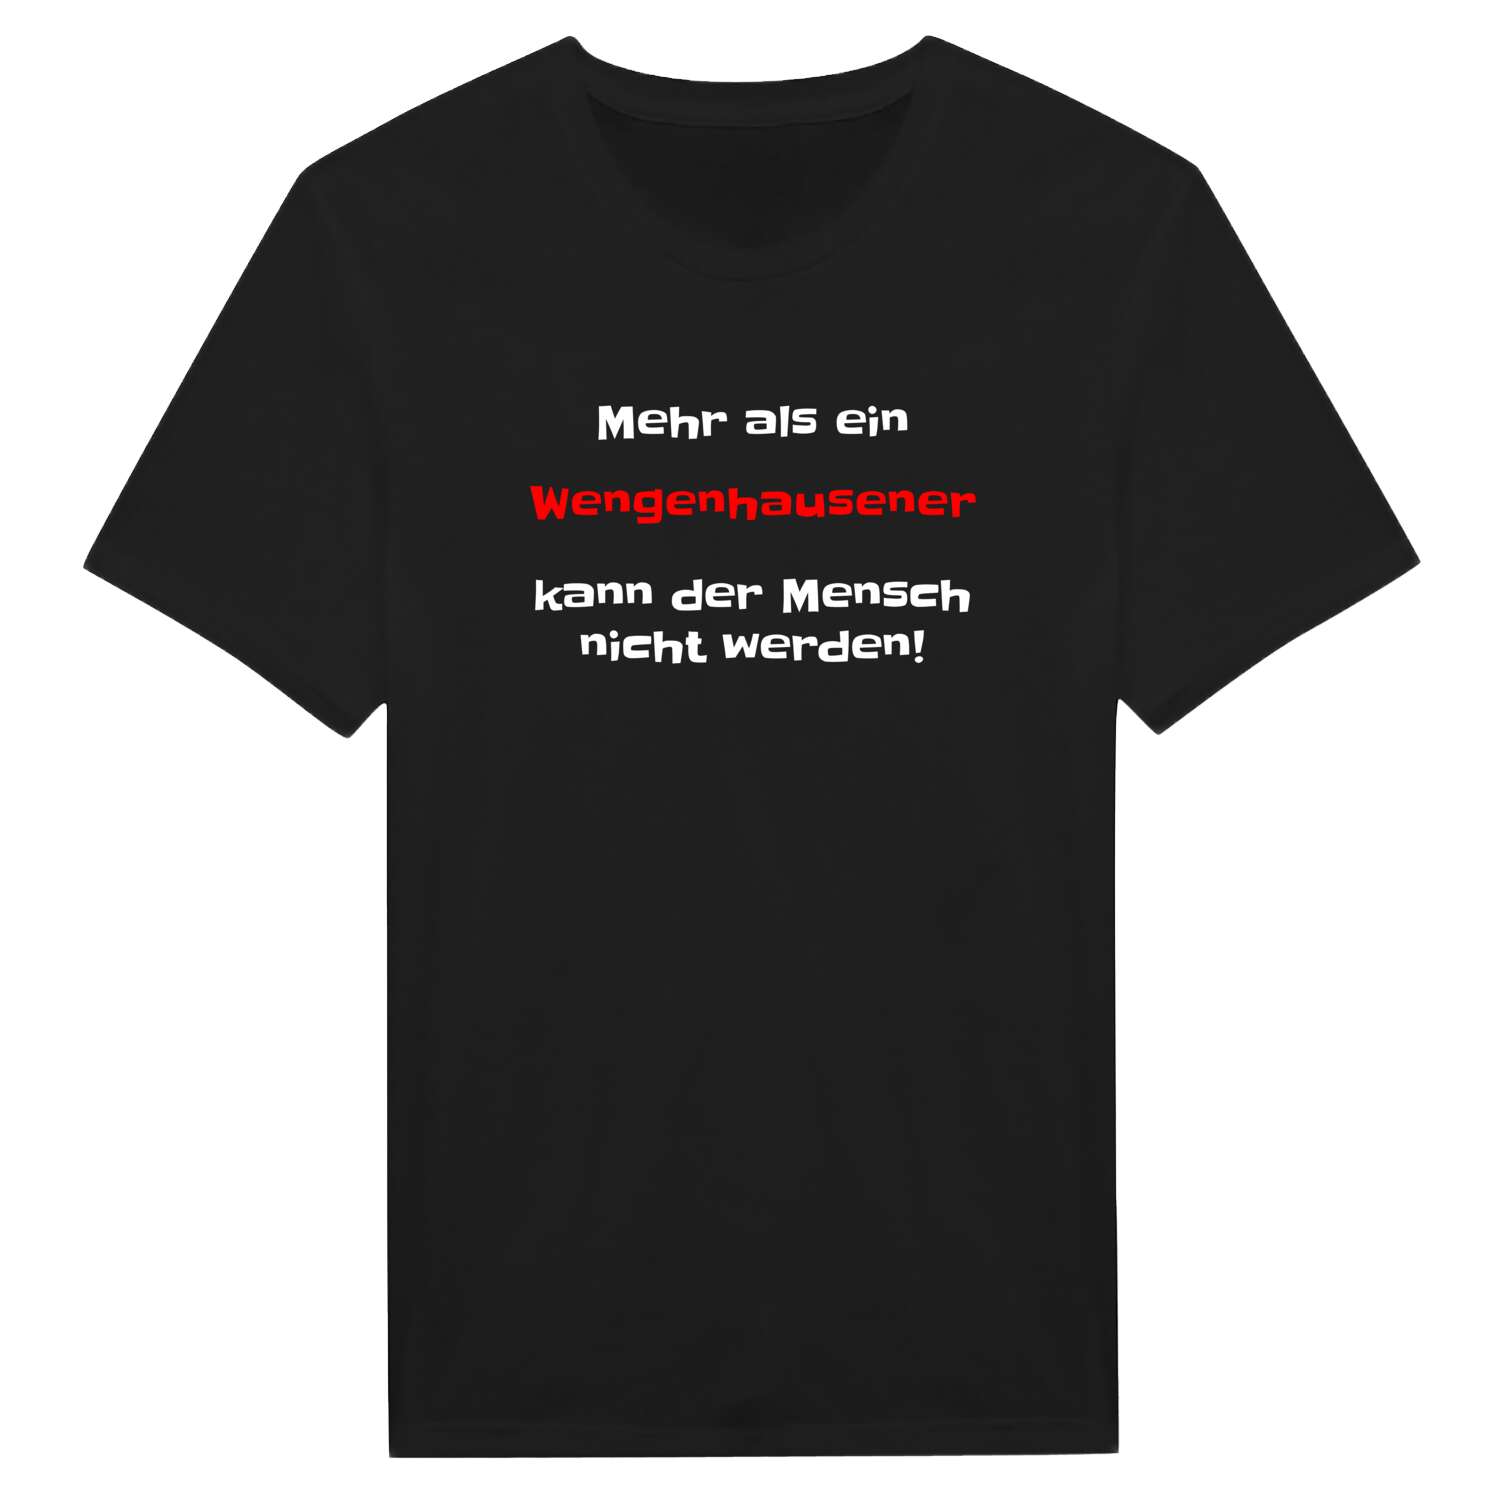 Wengenhausen T-Shirt »Mehr als ein«